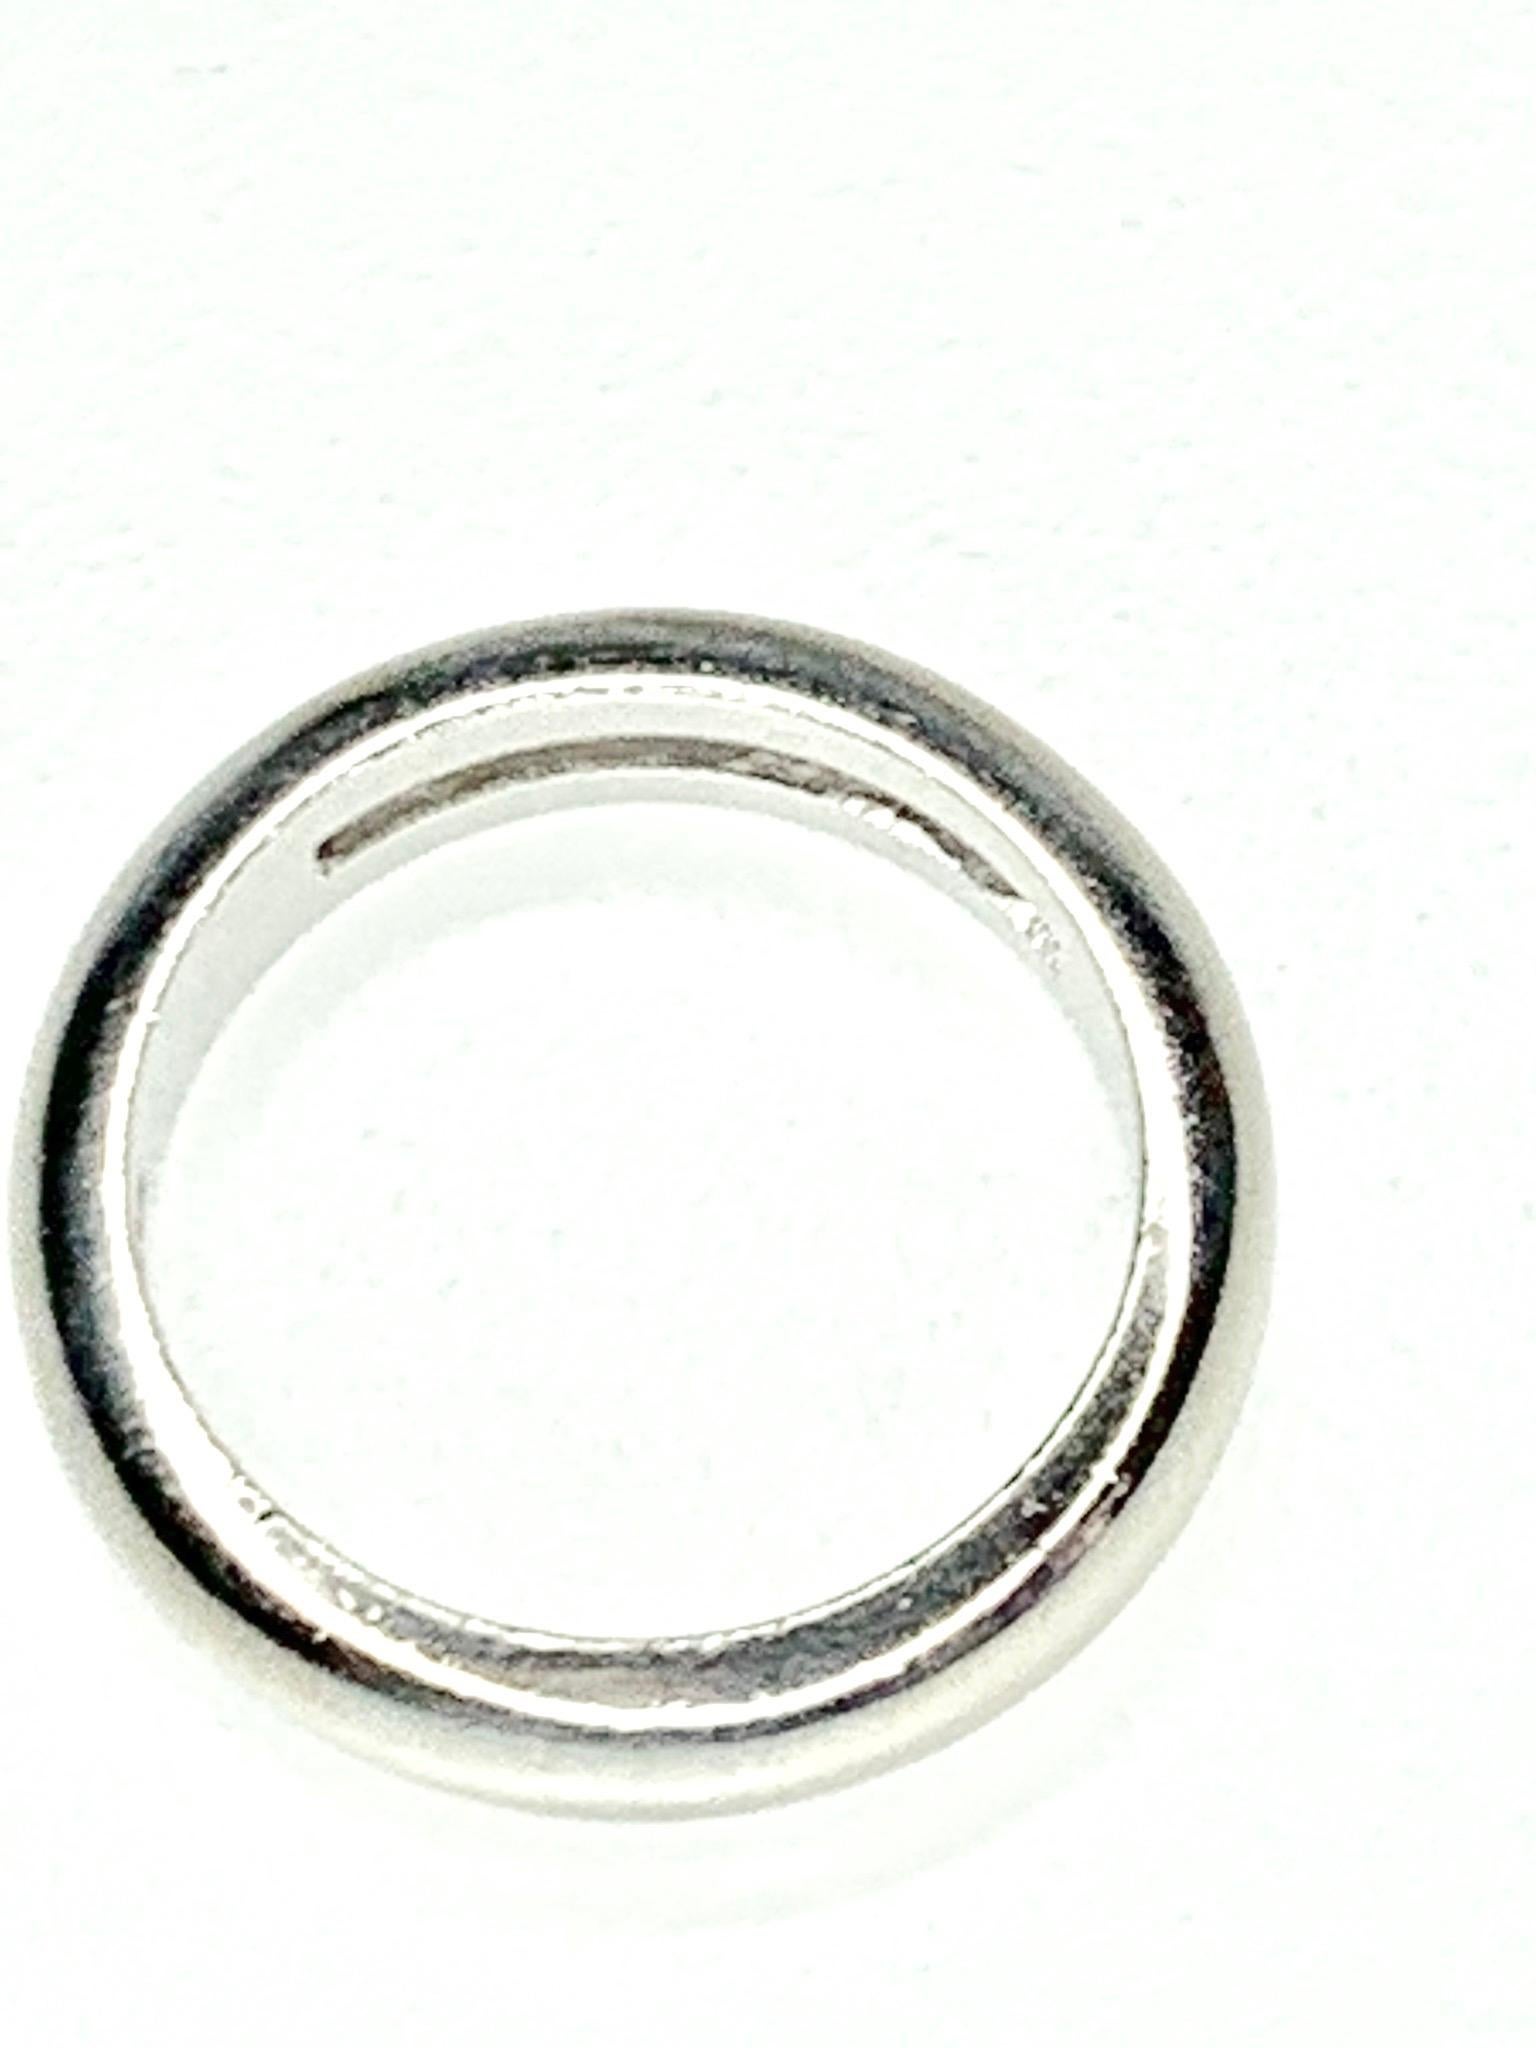 Baguette Cut Diamond Ring in 18K White Gold. est. Diam. : 0,40ct G/VS 